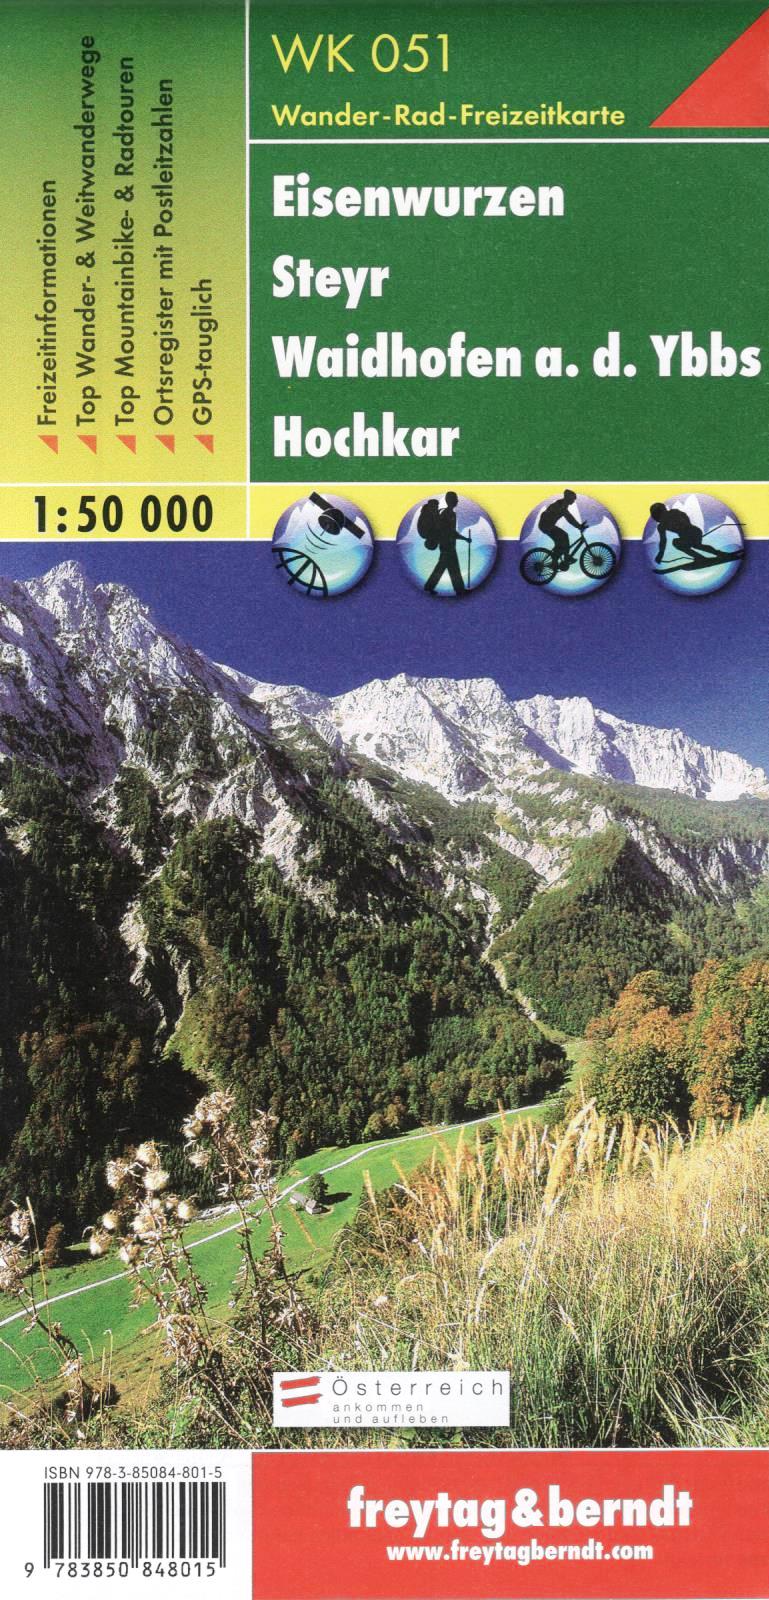 WK051 Eisenwurzen, Steyr, Waidhofen a.d. Ybbs, Hochkar 1:50t turistická mapa FB